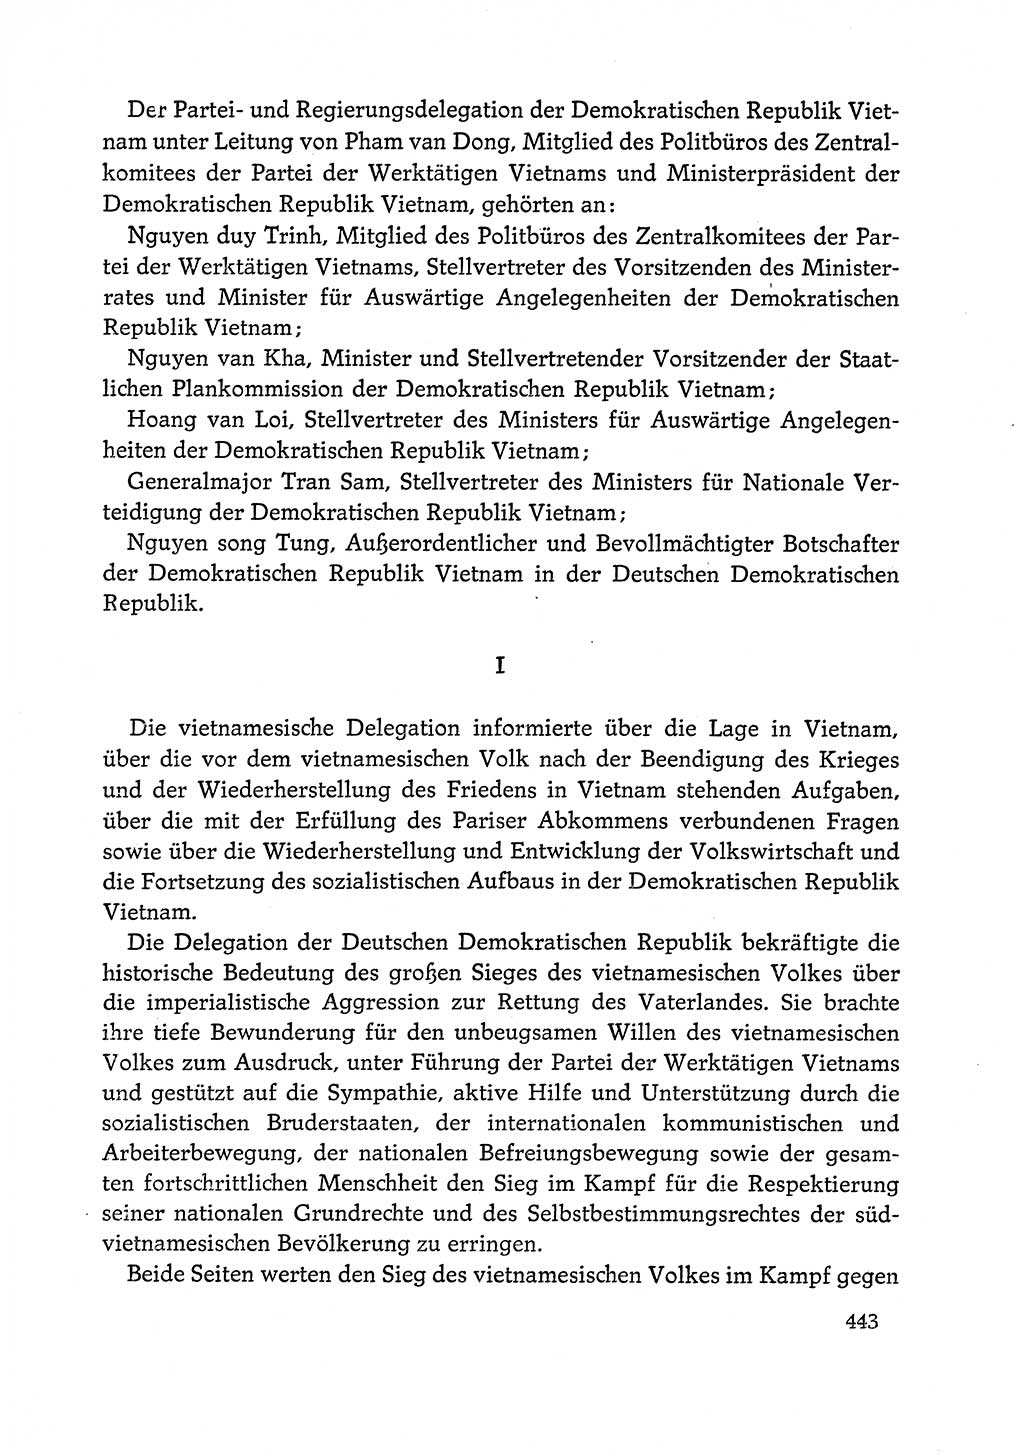 Dokumente der Sozialistischen Einheitspartei Deutschlands (SED) [Deutsche Demokratische Republik (DDR)] 1972-1973, Seite 443 (Dok. SED DDR 1972-1973, S. 443)